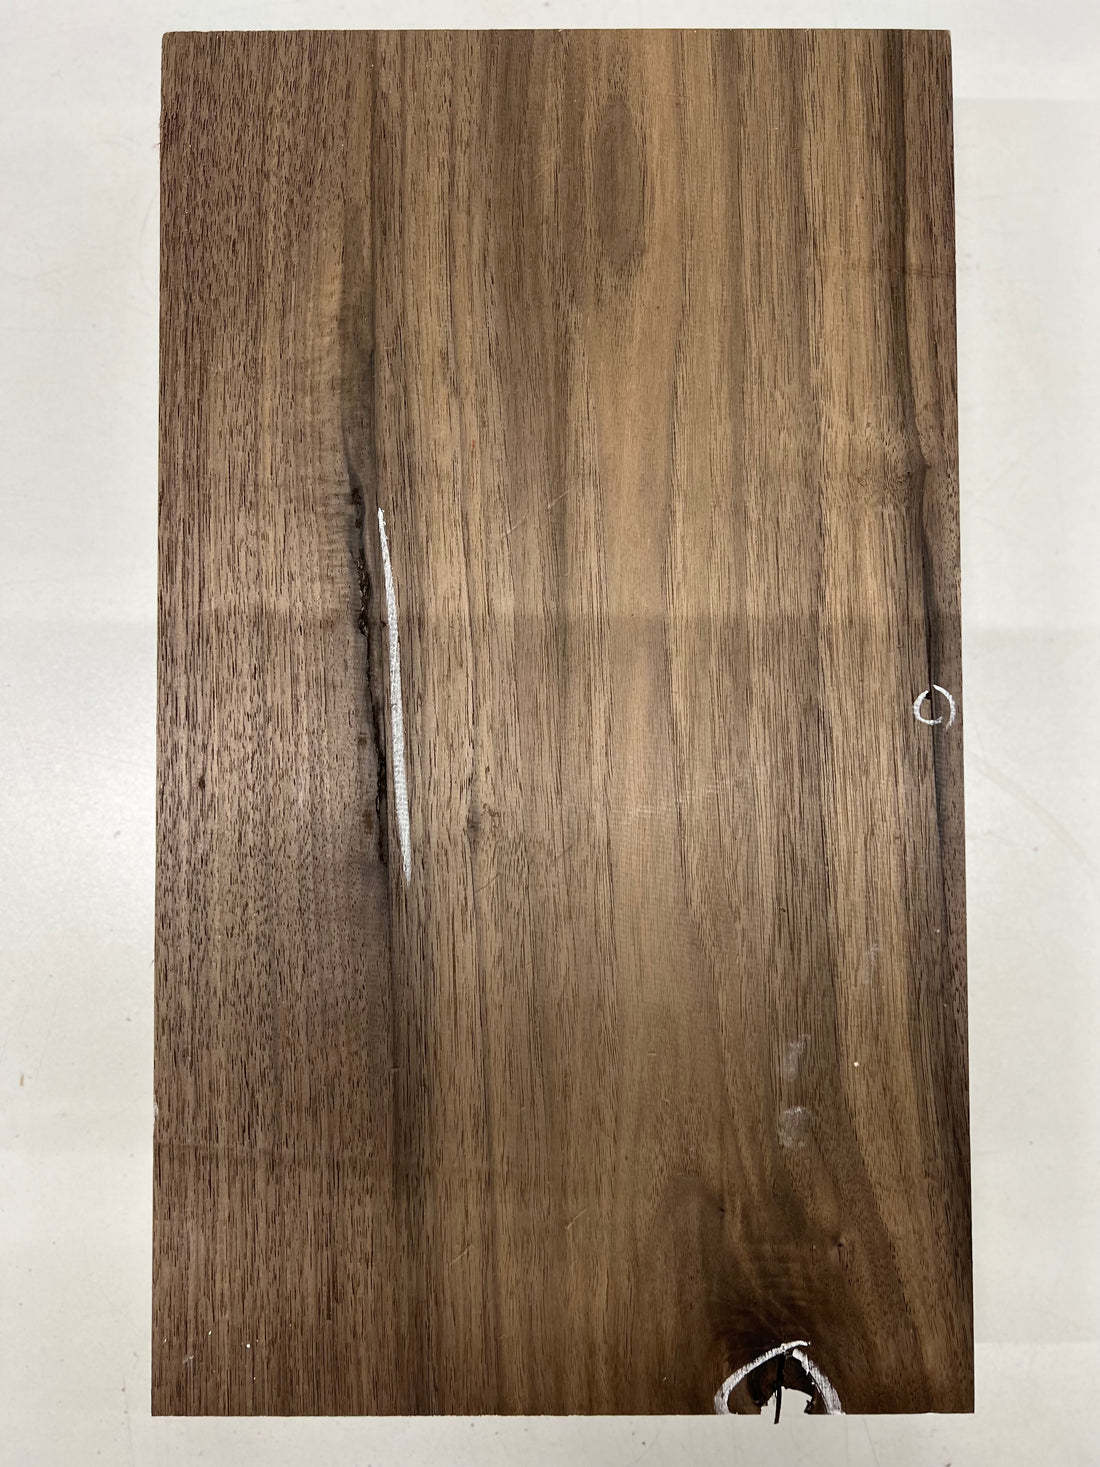 Black Walnut Lumber Board Wood Blank 18&quot;x 10-3/8&quot;x 1-7/8&quot; 